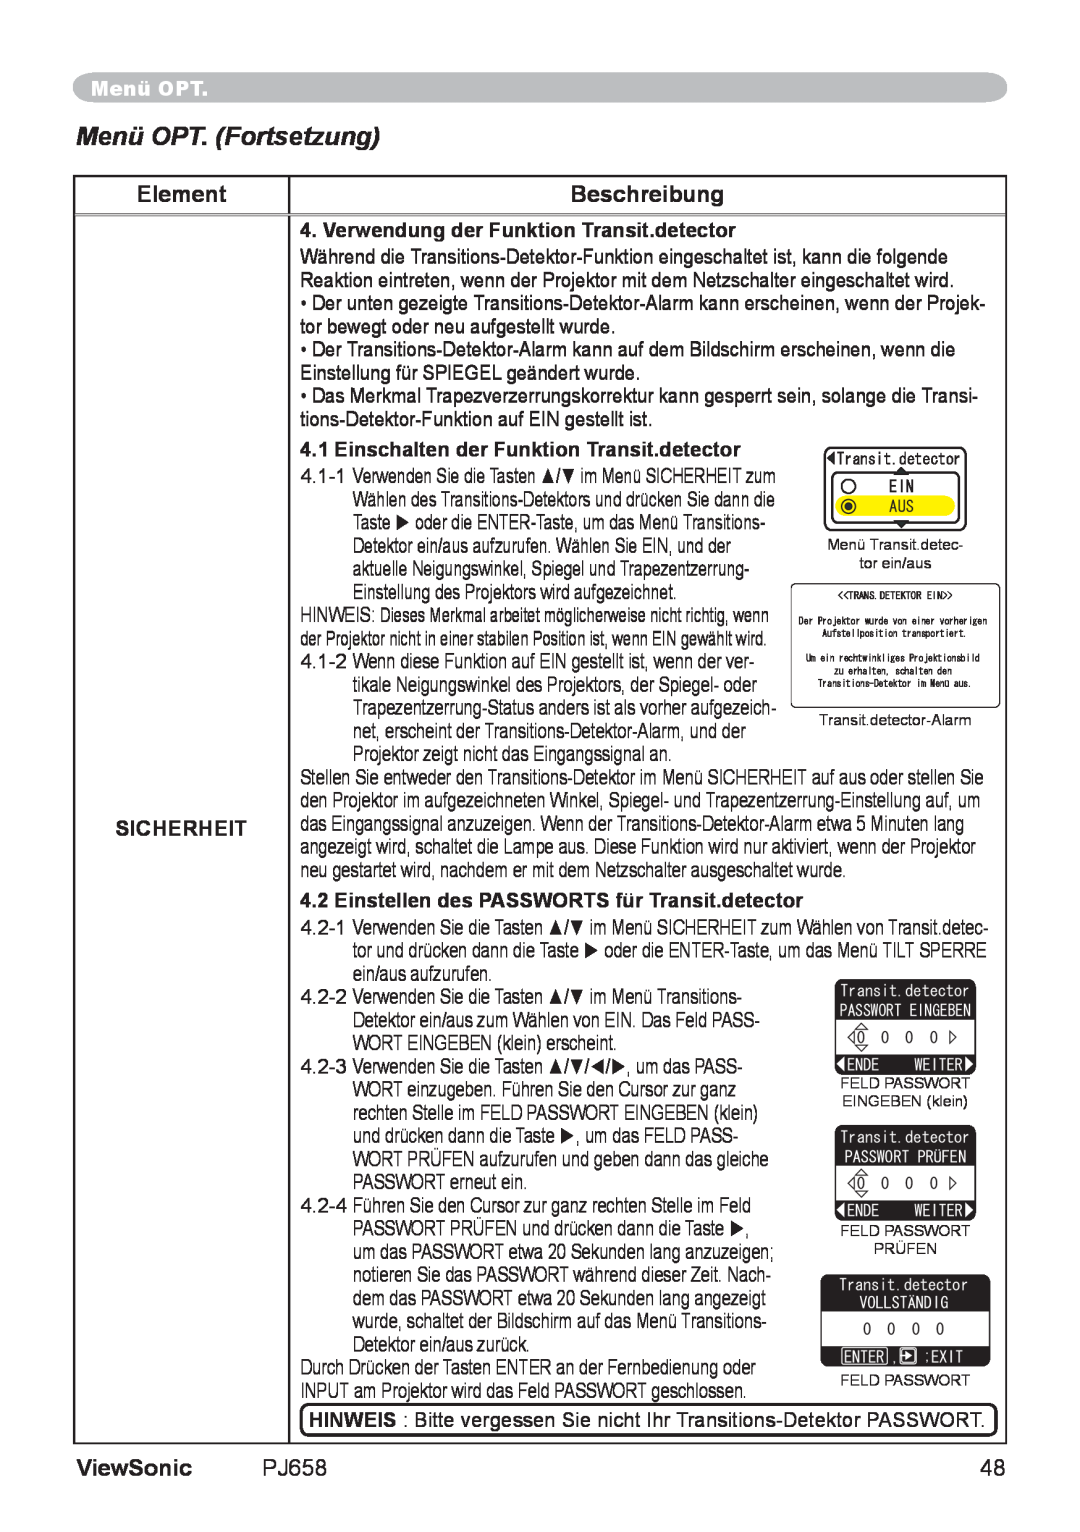 ViewSonic VS11361 manual Menü OPT. Fortsetzung, Element, Beschreibung, ViewSonic 